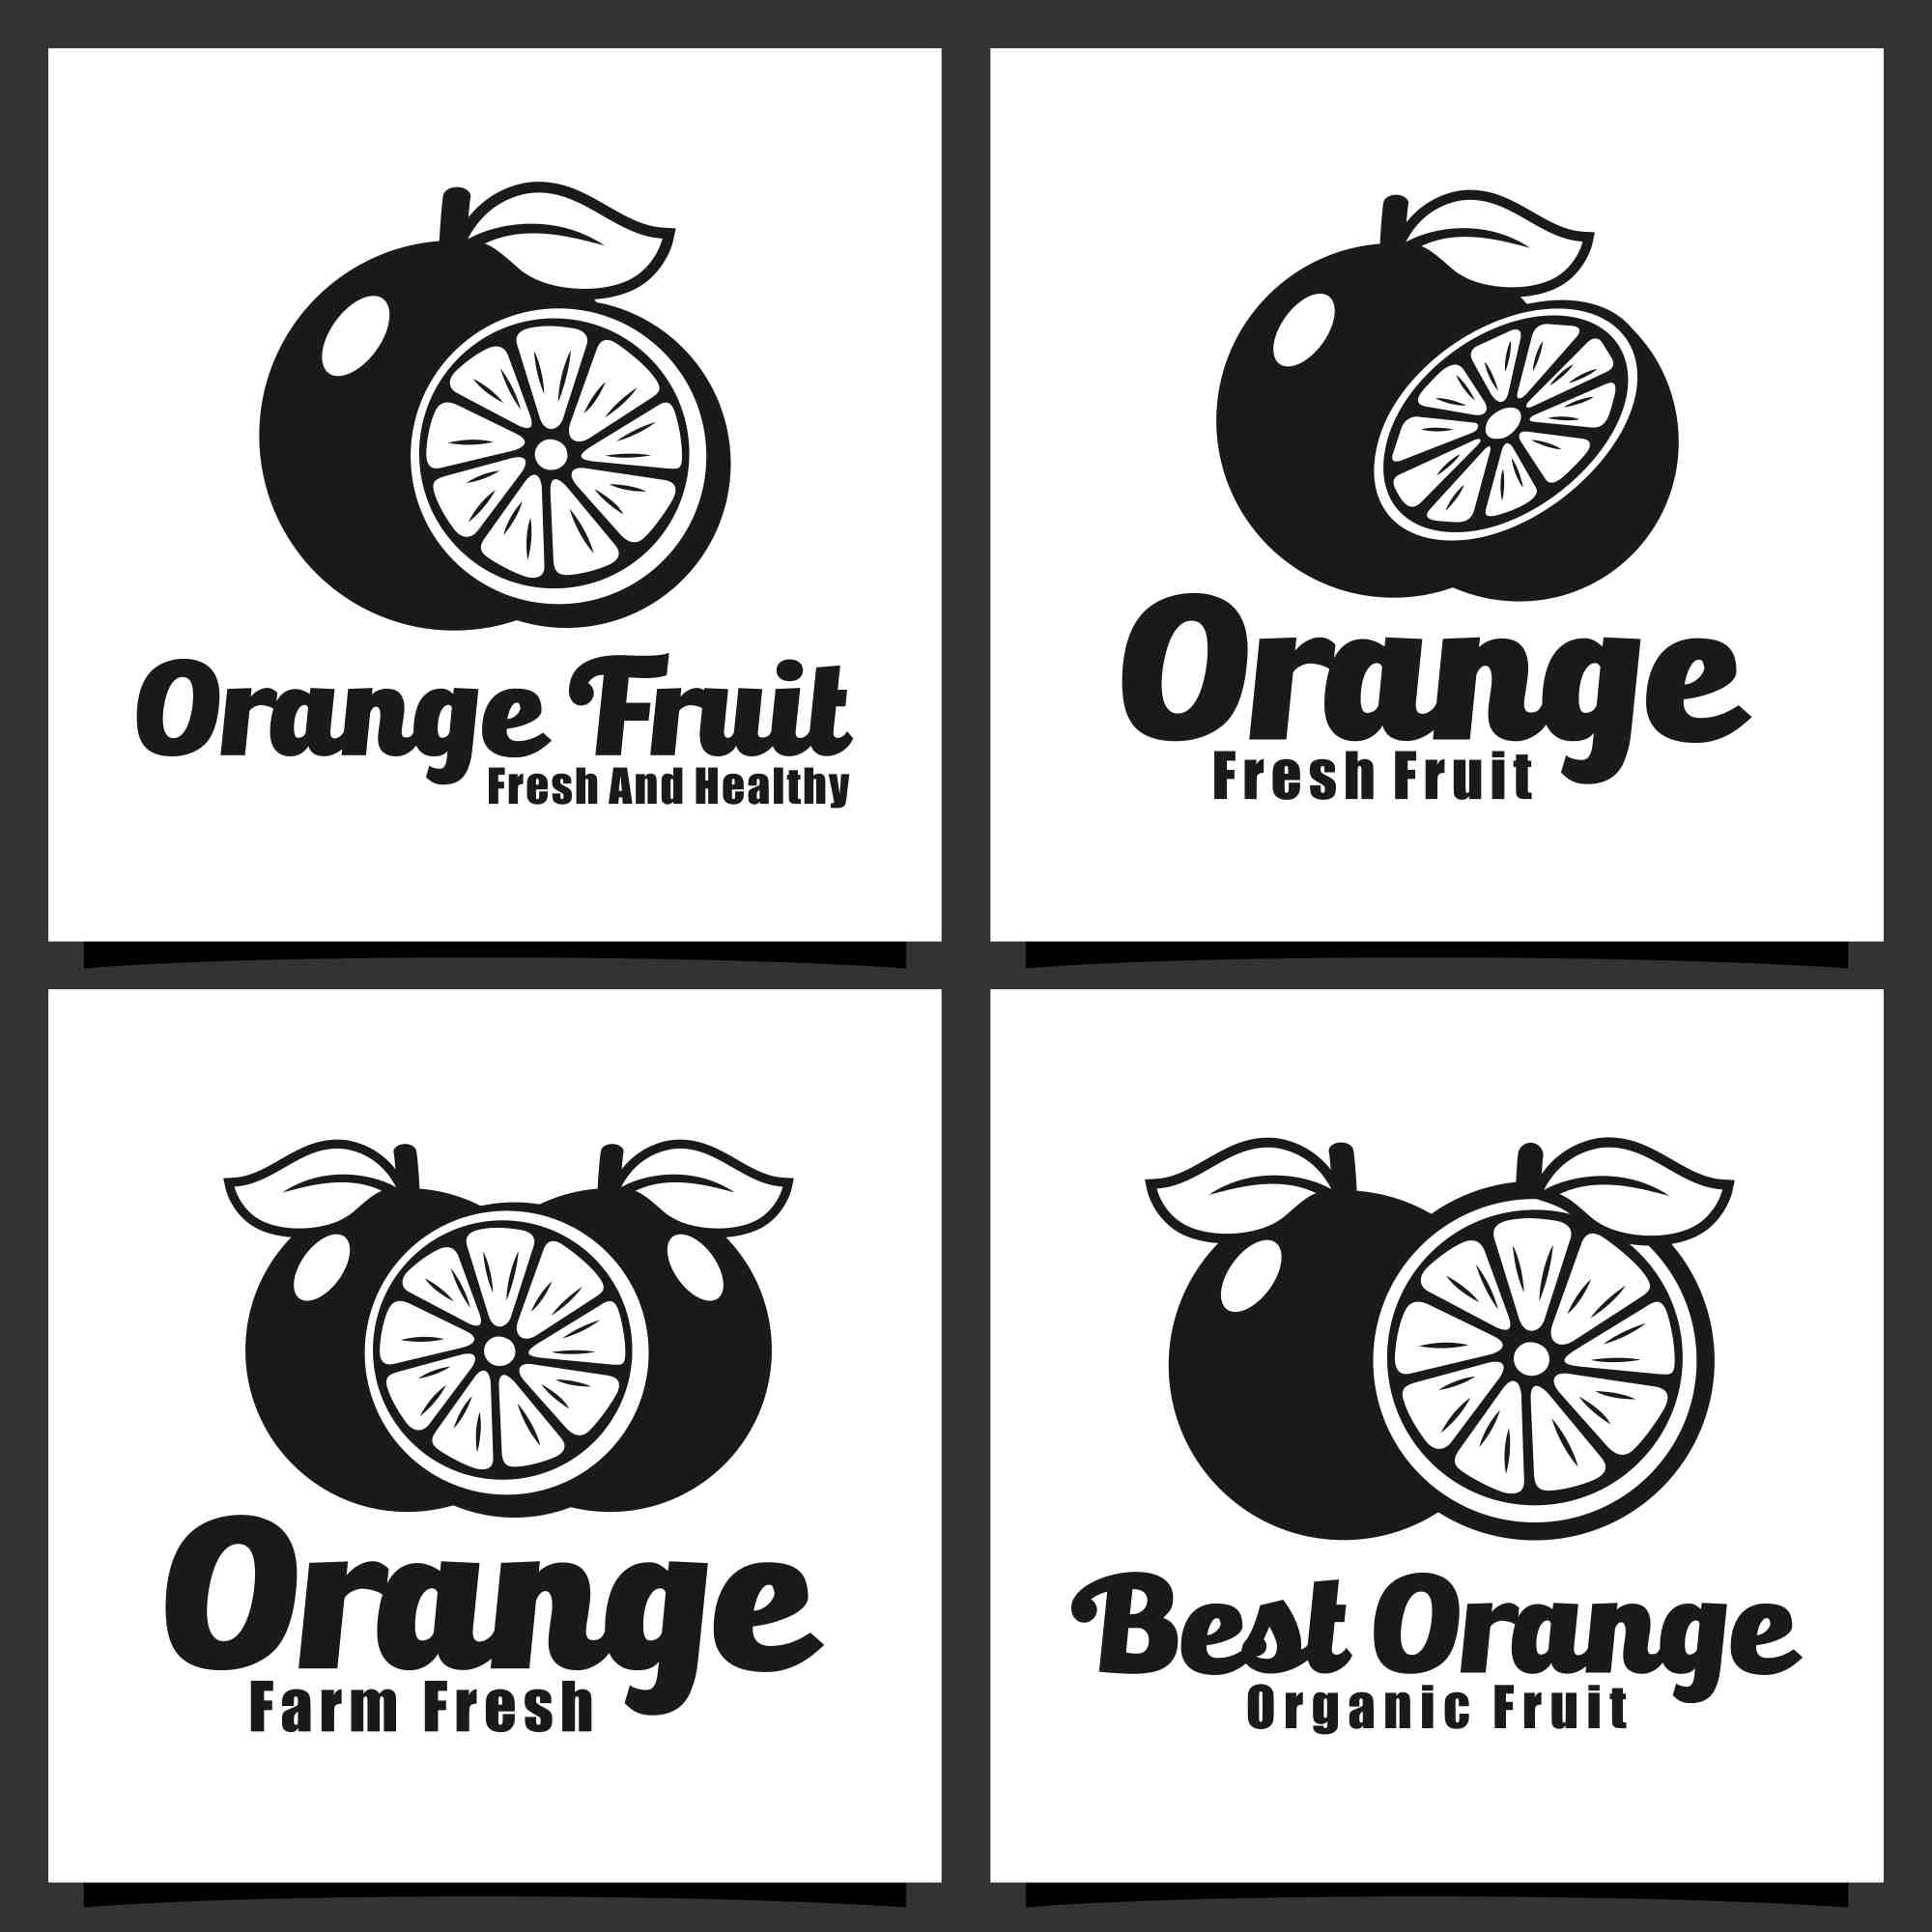 Set 18 Orange fruit badge logo design collection - $6 preview image.